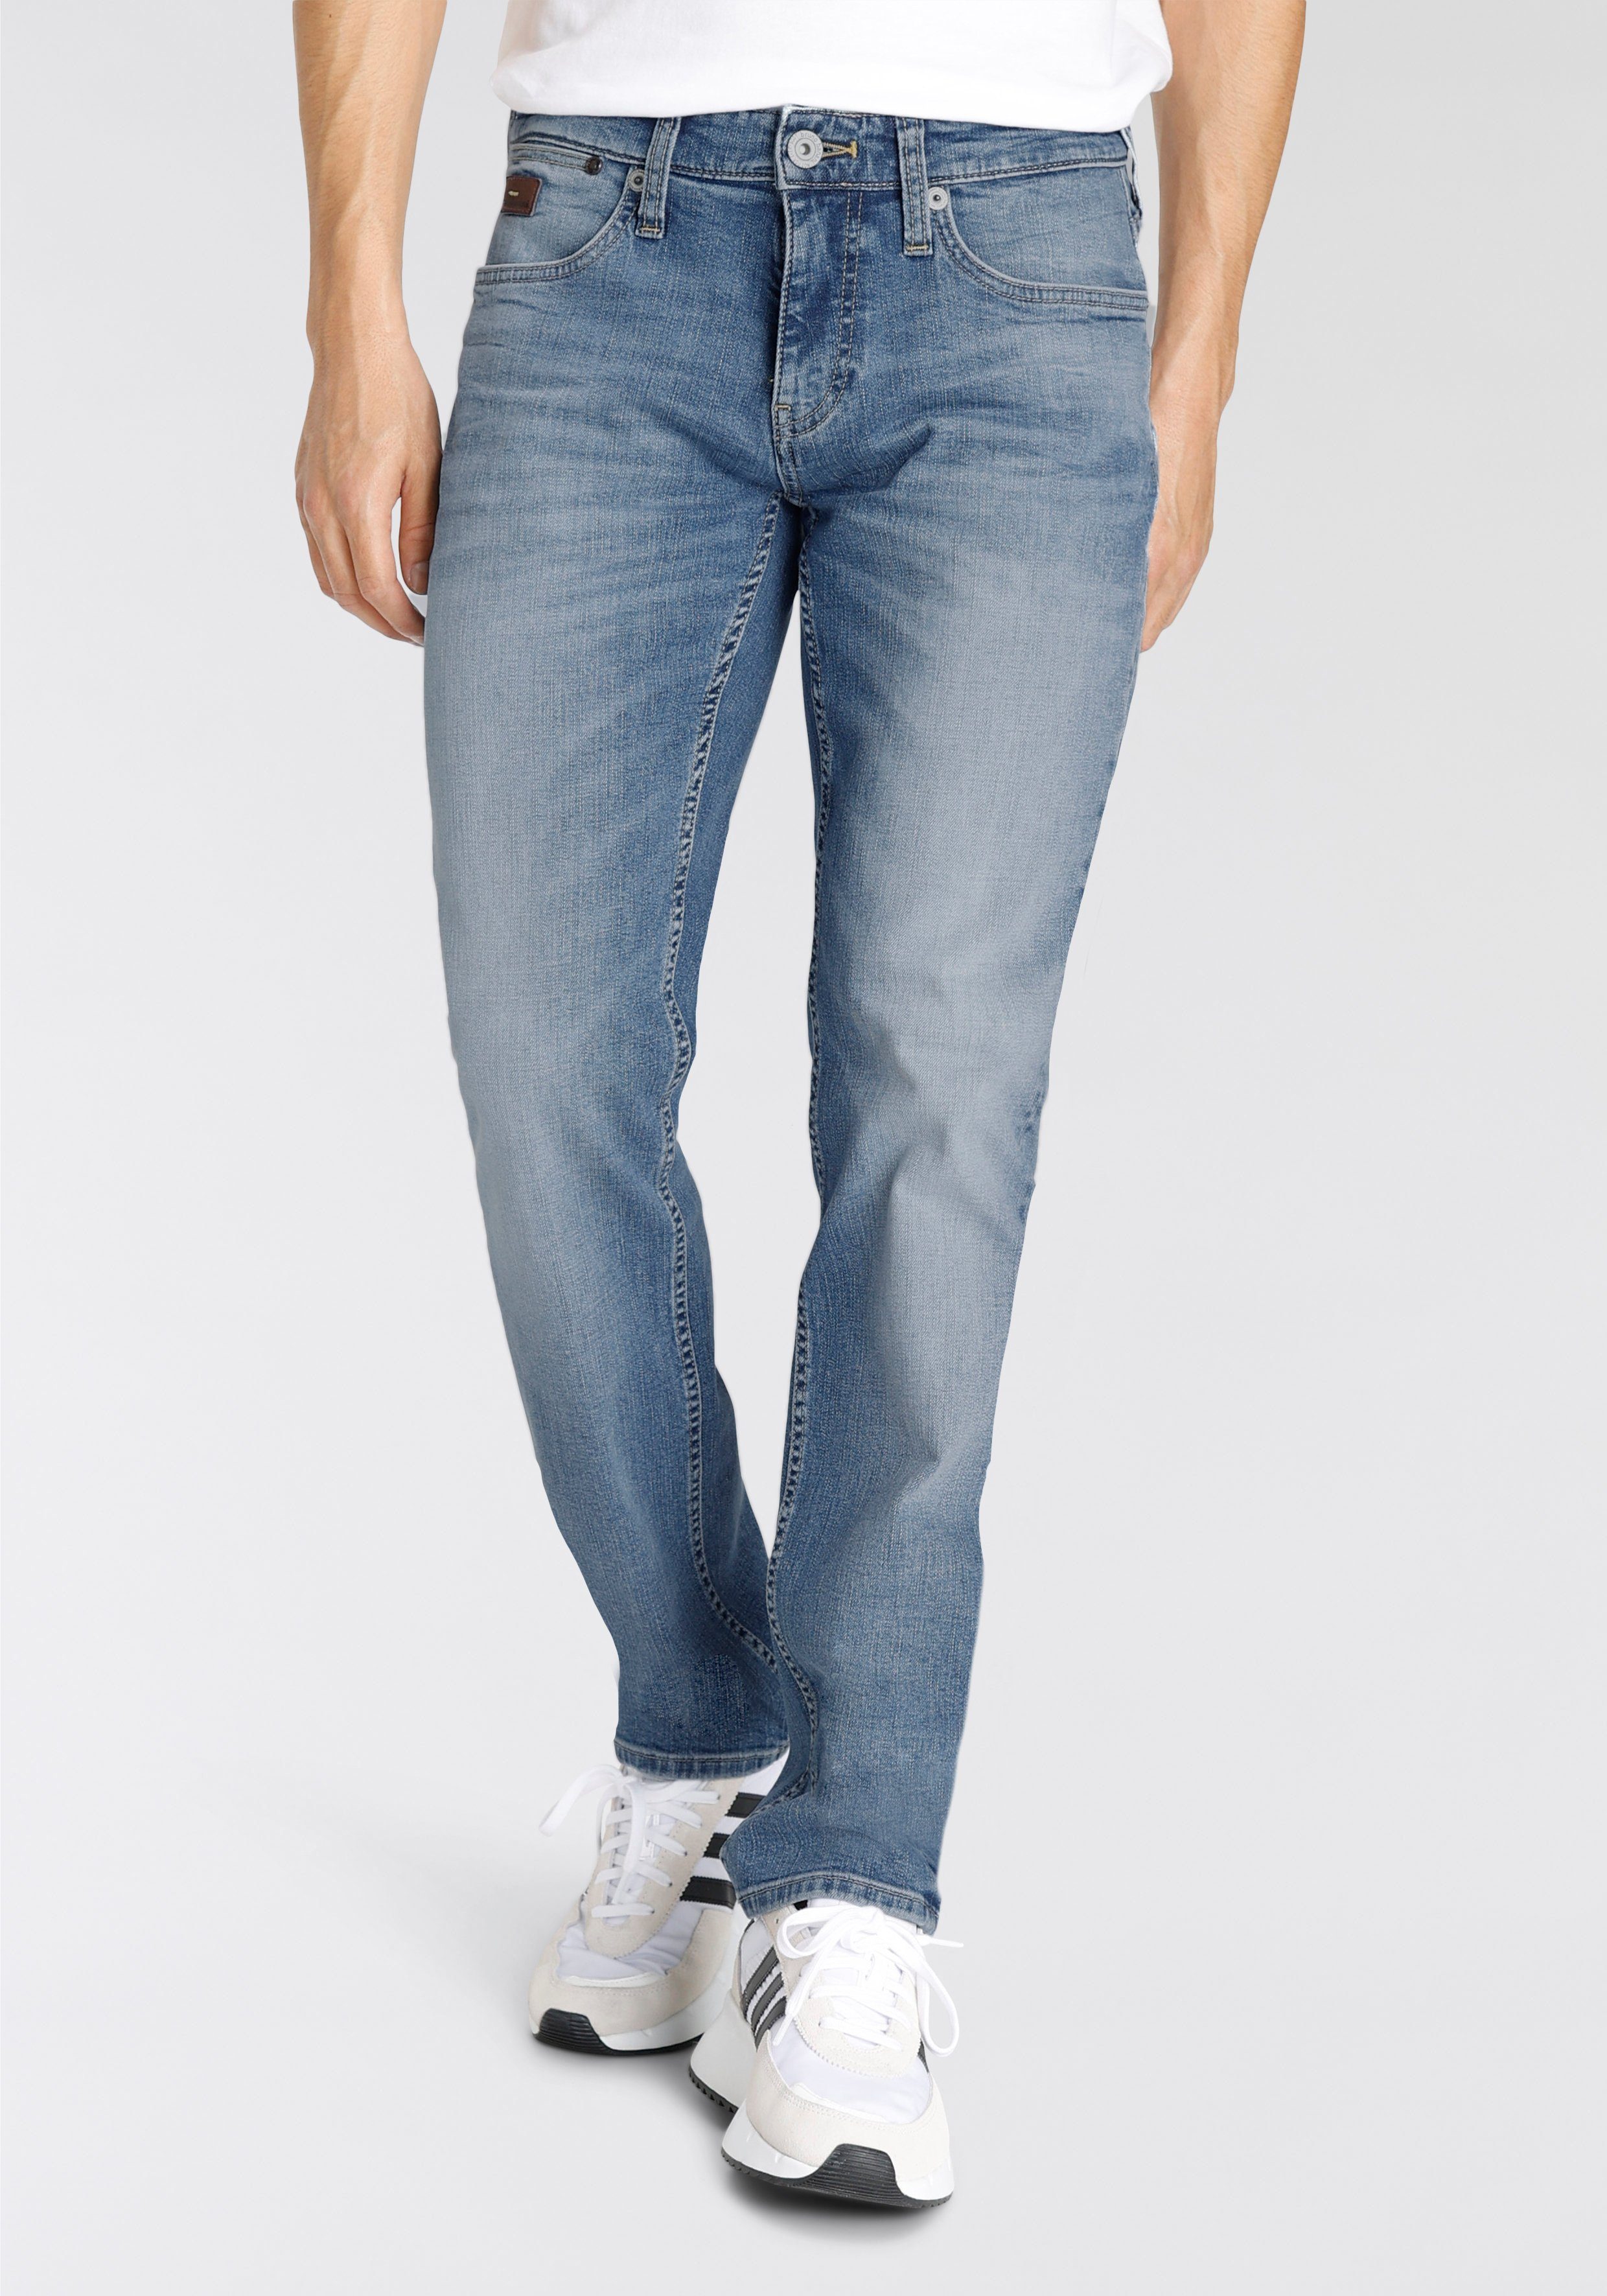 5-Pocket-Jeans Lederbadges Mit Banani Bruno